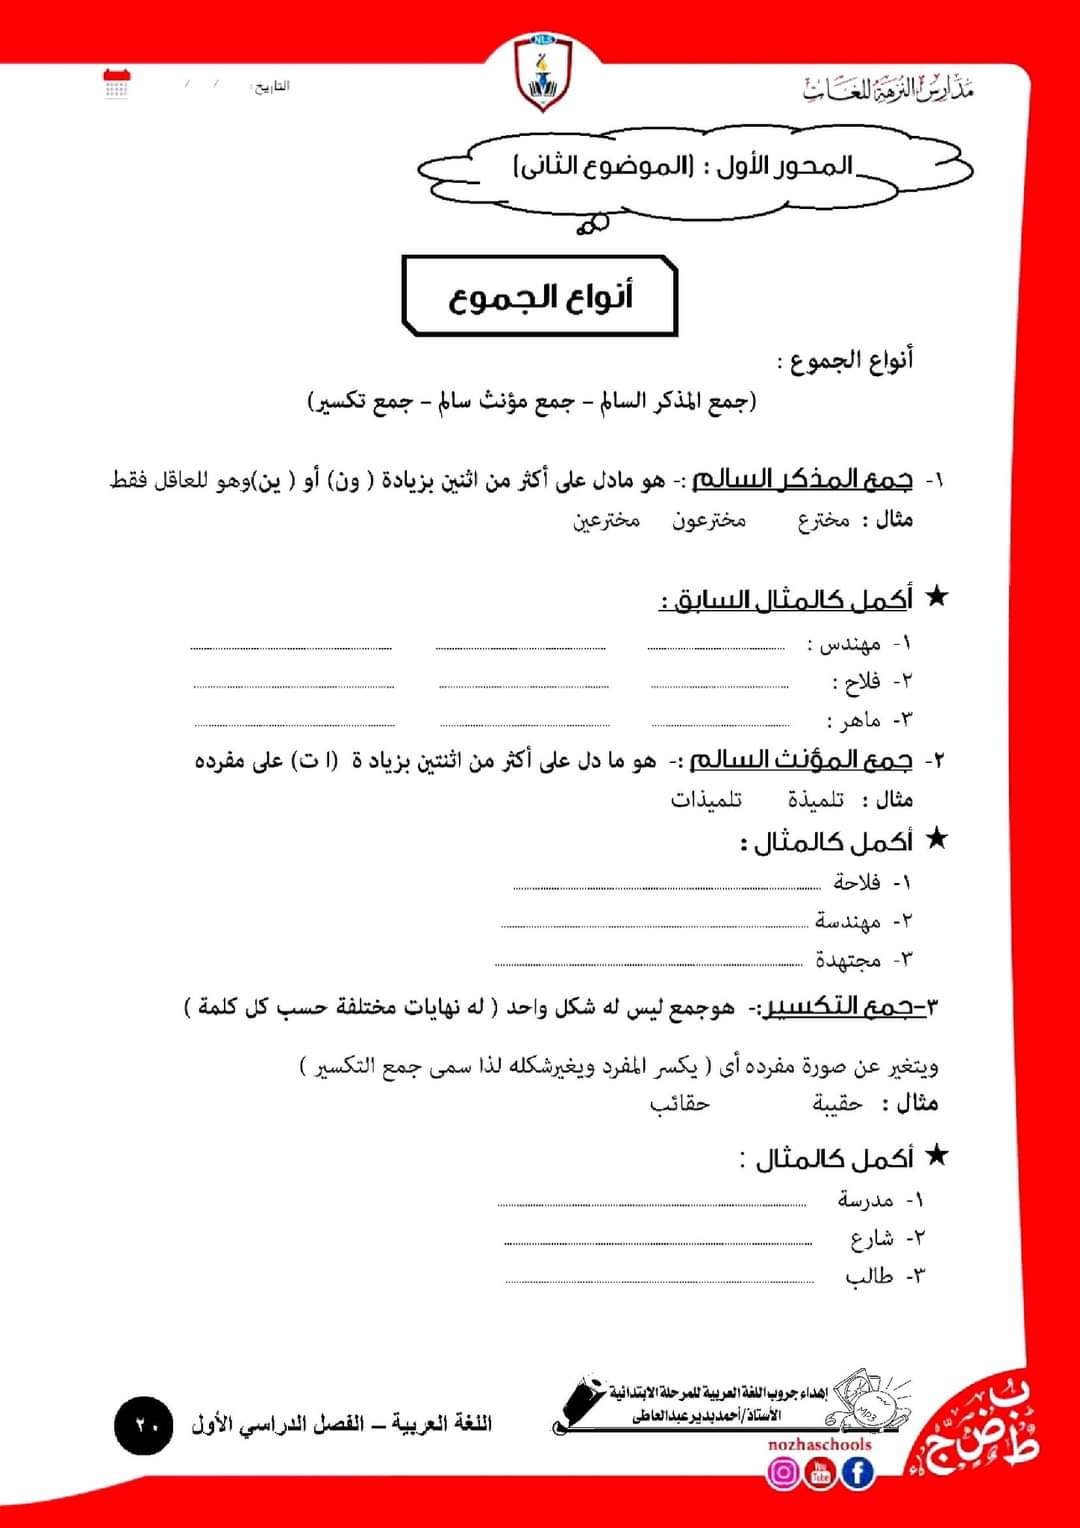 بوكلت أنشطة اللغة العربية للصف الرابع ٢٠٢٢ - اللغة العربية